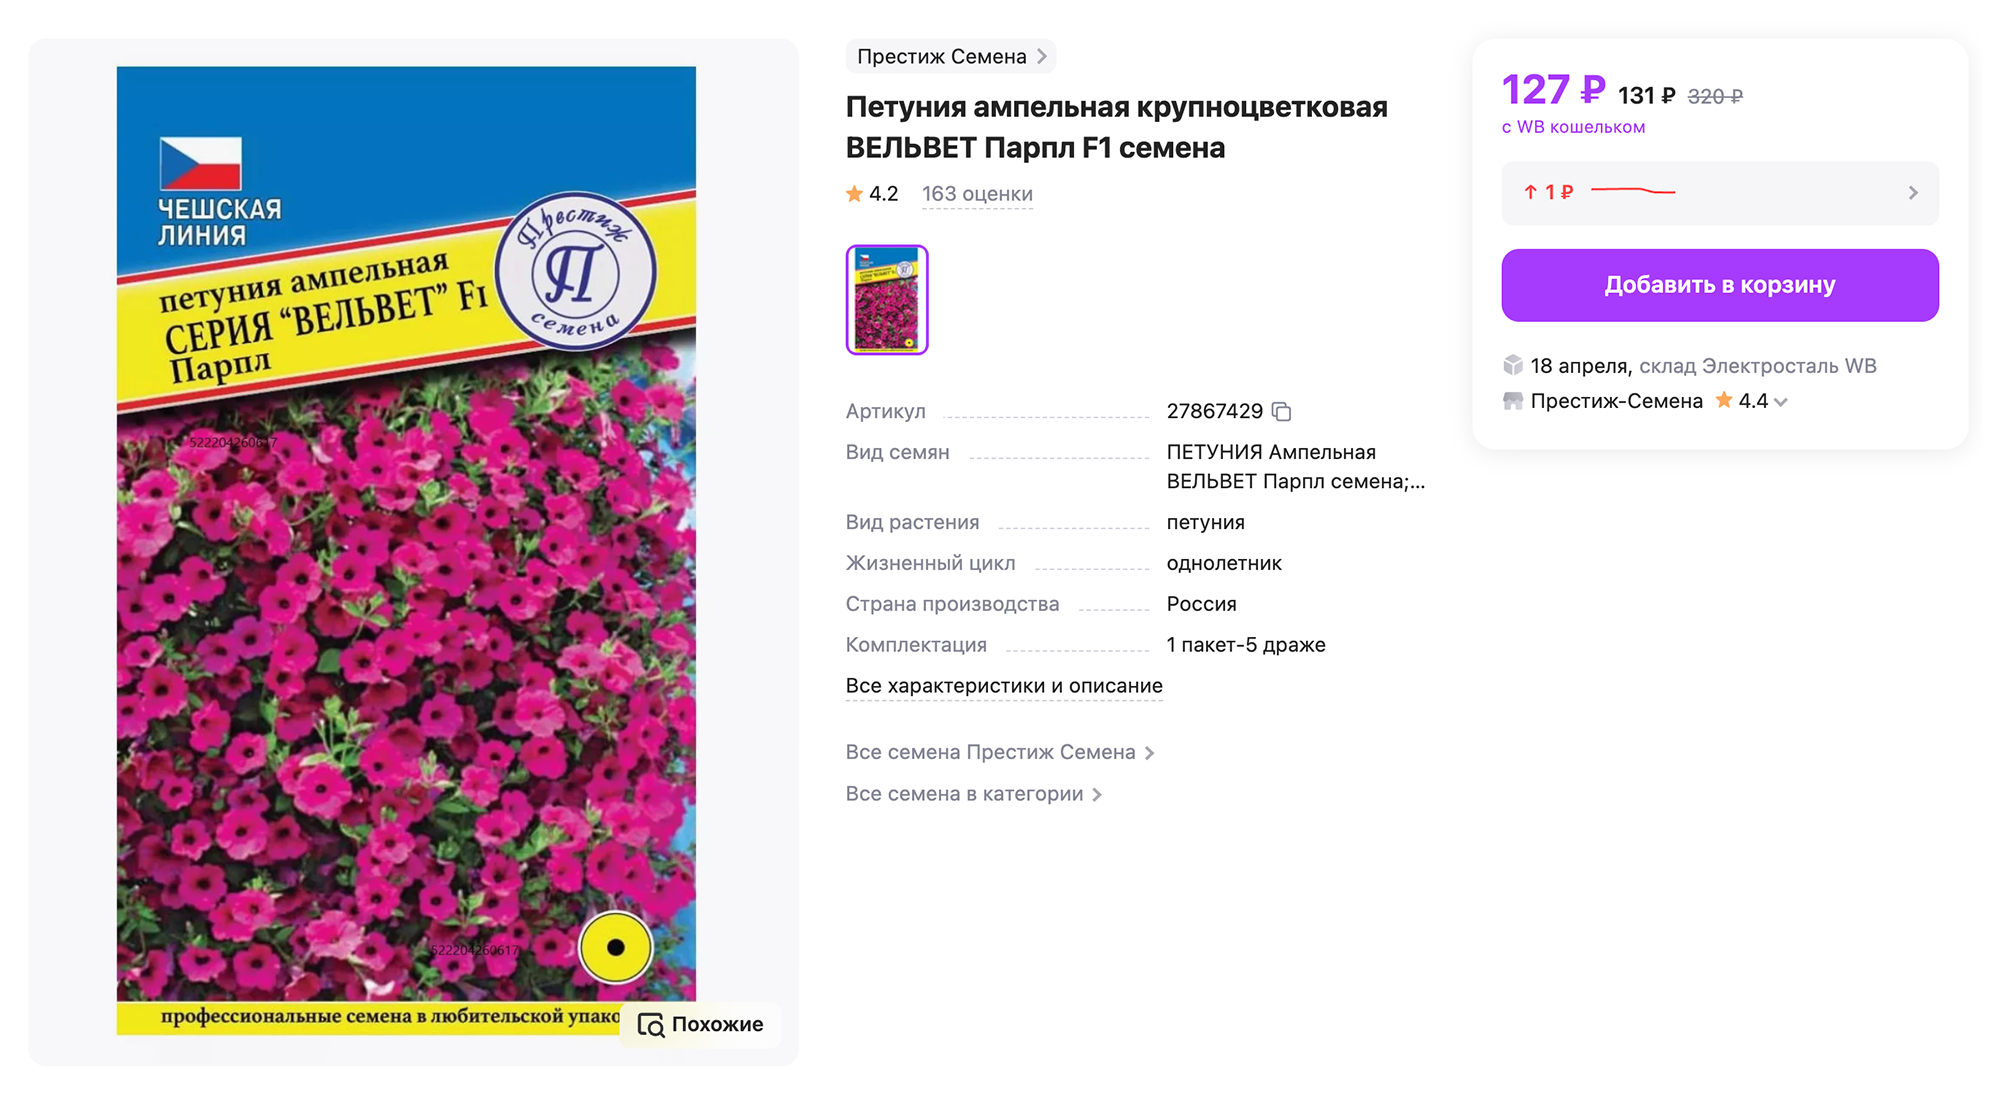 Семена обычно покупаю на маркетплейсах или в «Оби⁠-⁠саду». Единственный ориентир при выборе — расцветка. Источник: wildberries.ru